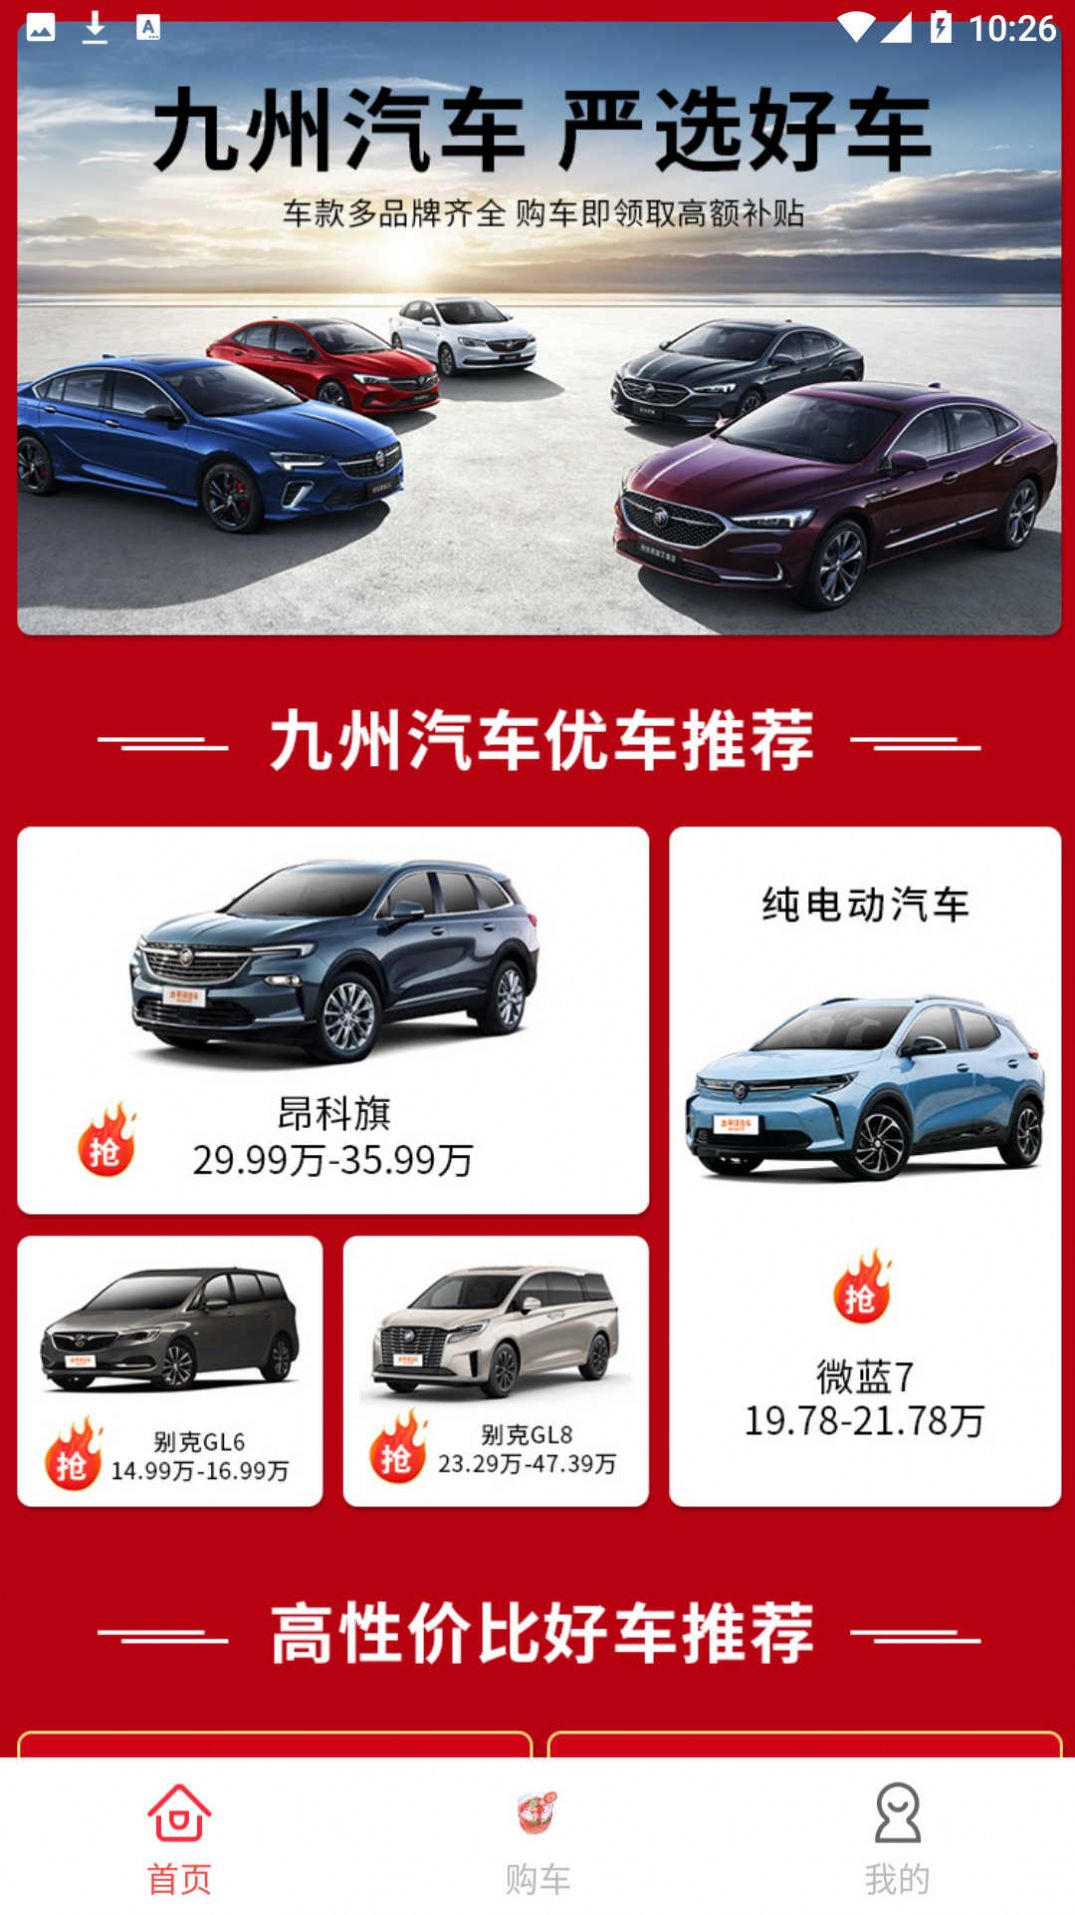 九州优车销售手机版app图片1